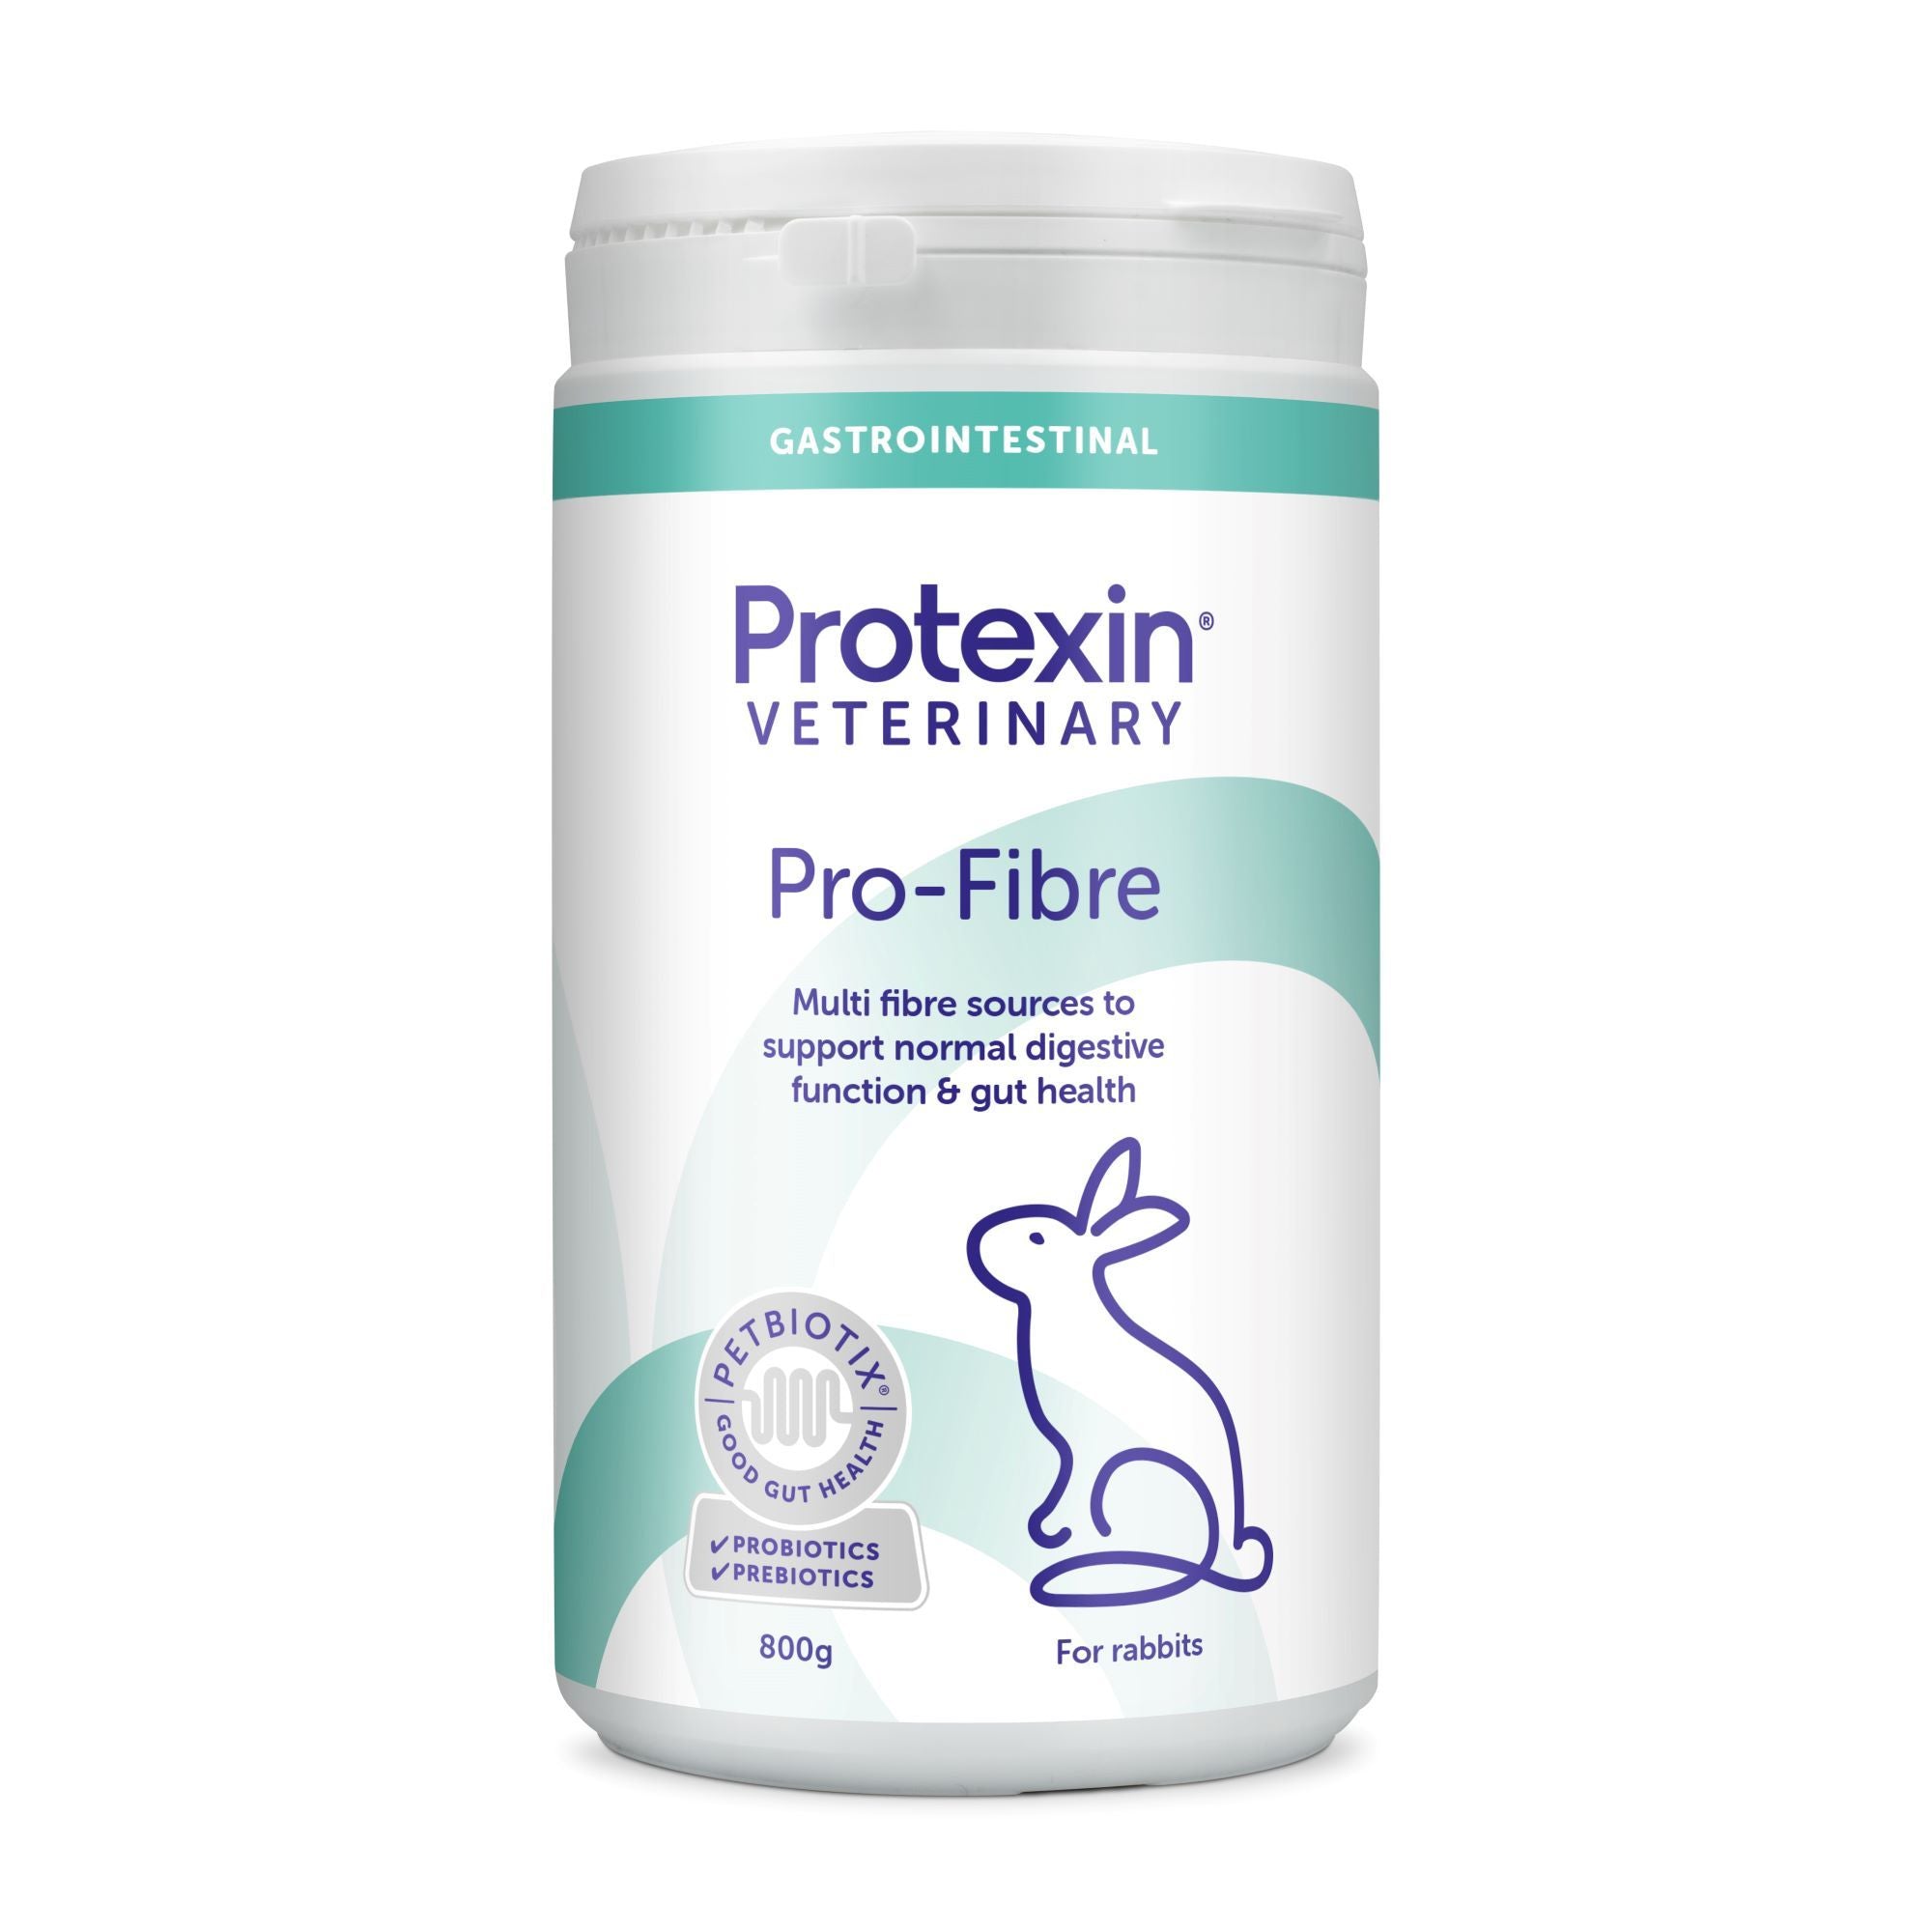 Protexin Pro-Fibre for Rabbits